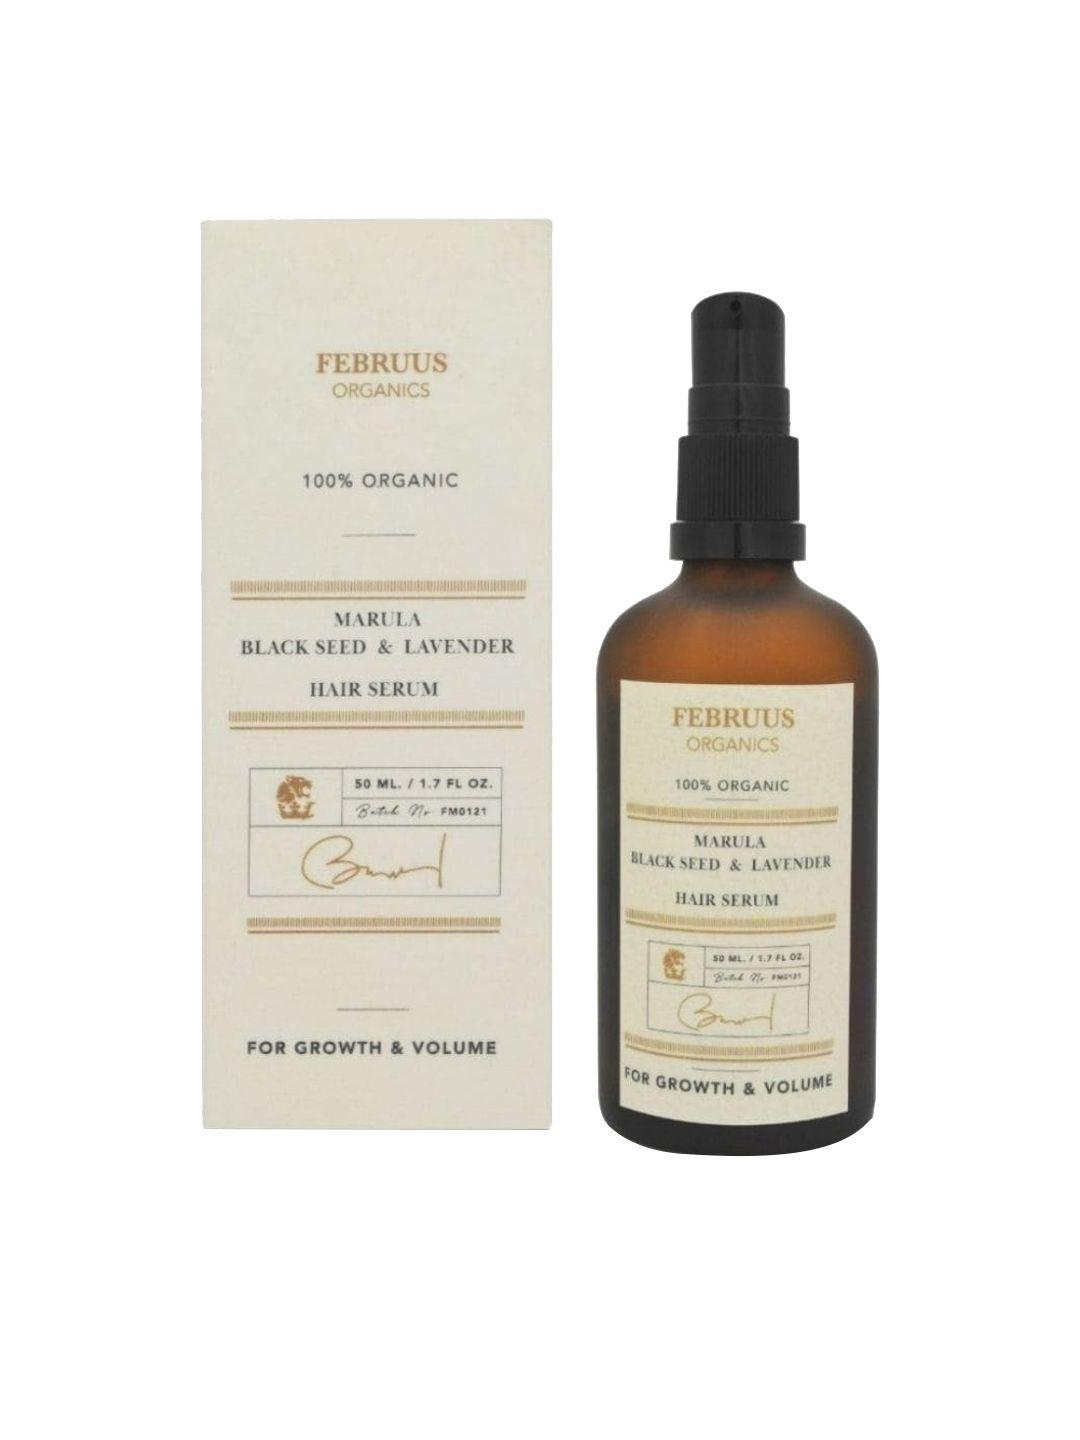 februus-organics-marula-black-seed-&-lavender-hair-serum-50-ml